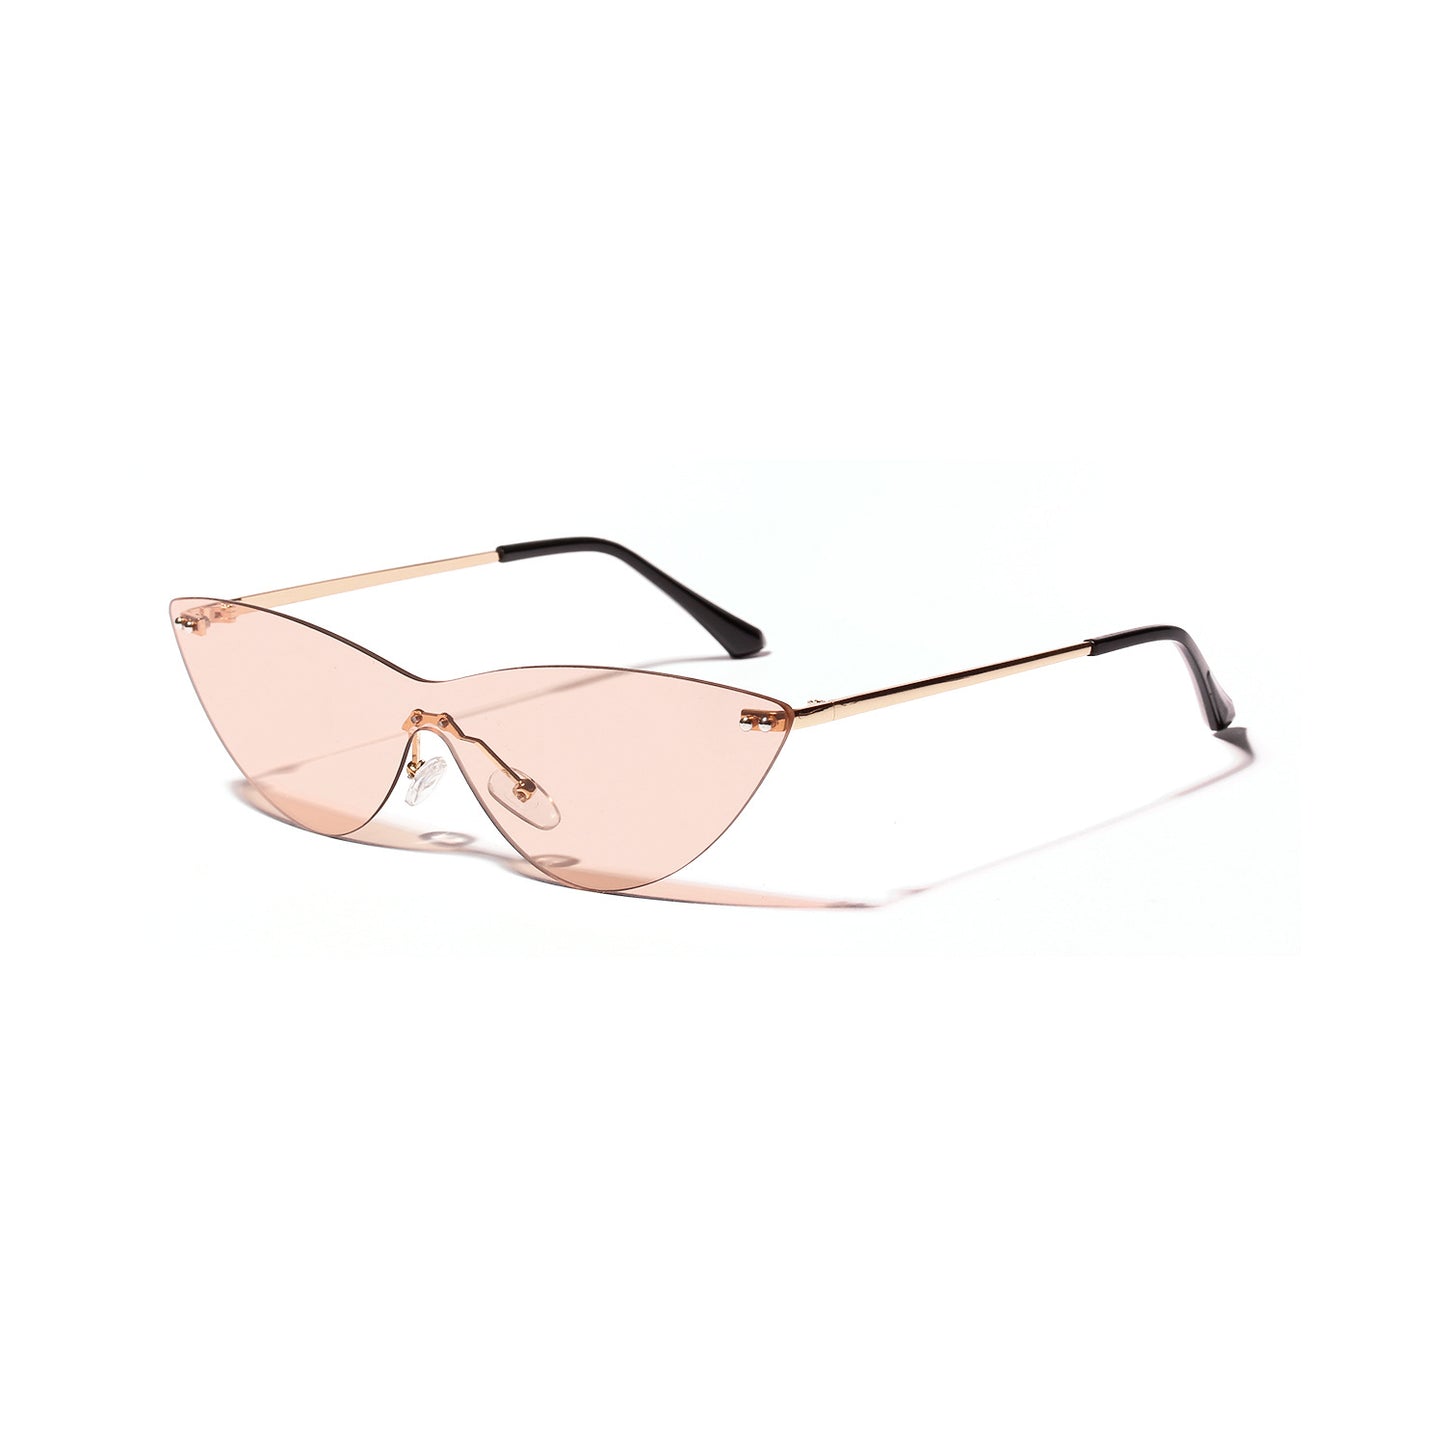 Gafas de sol vintage con montura de metal para adultos - Protección UV400